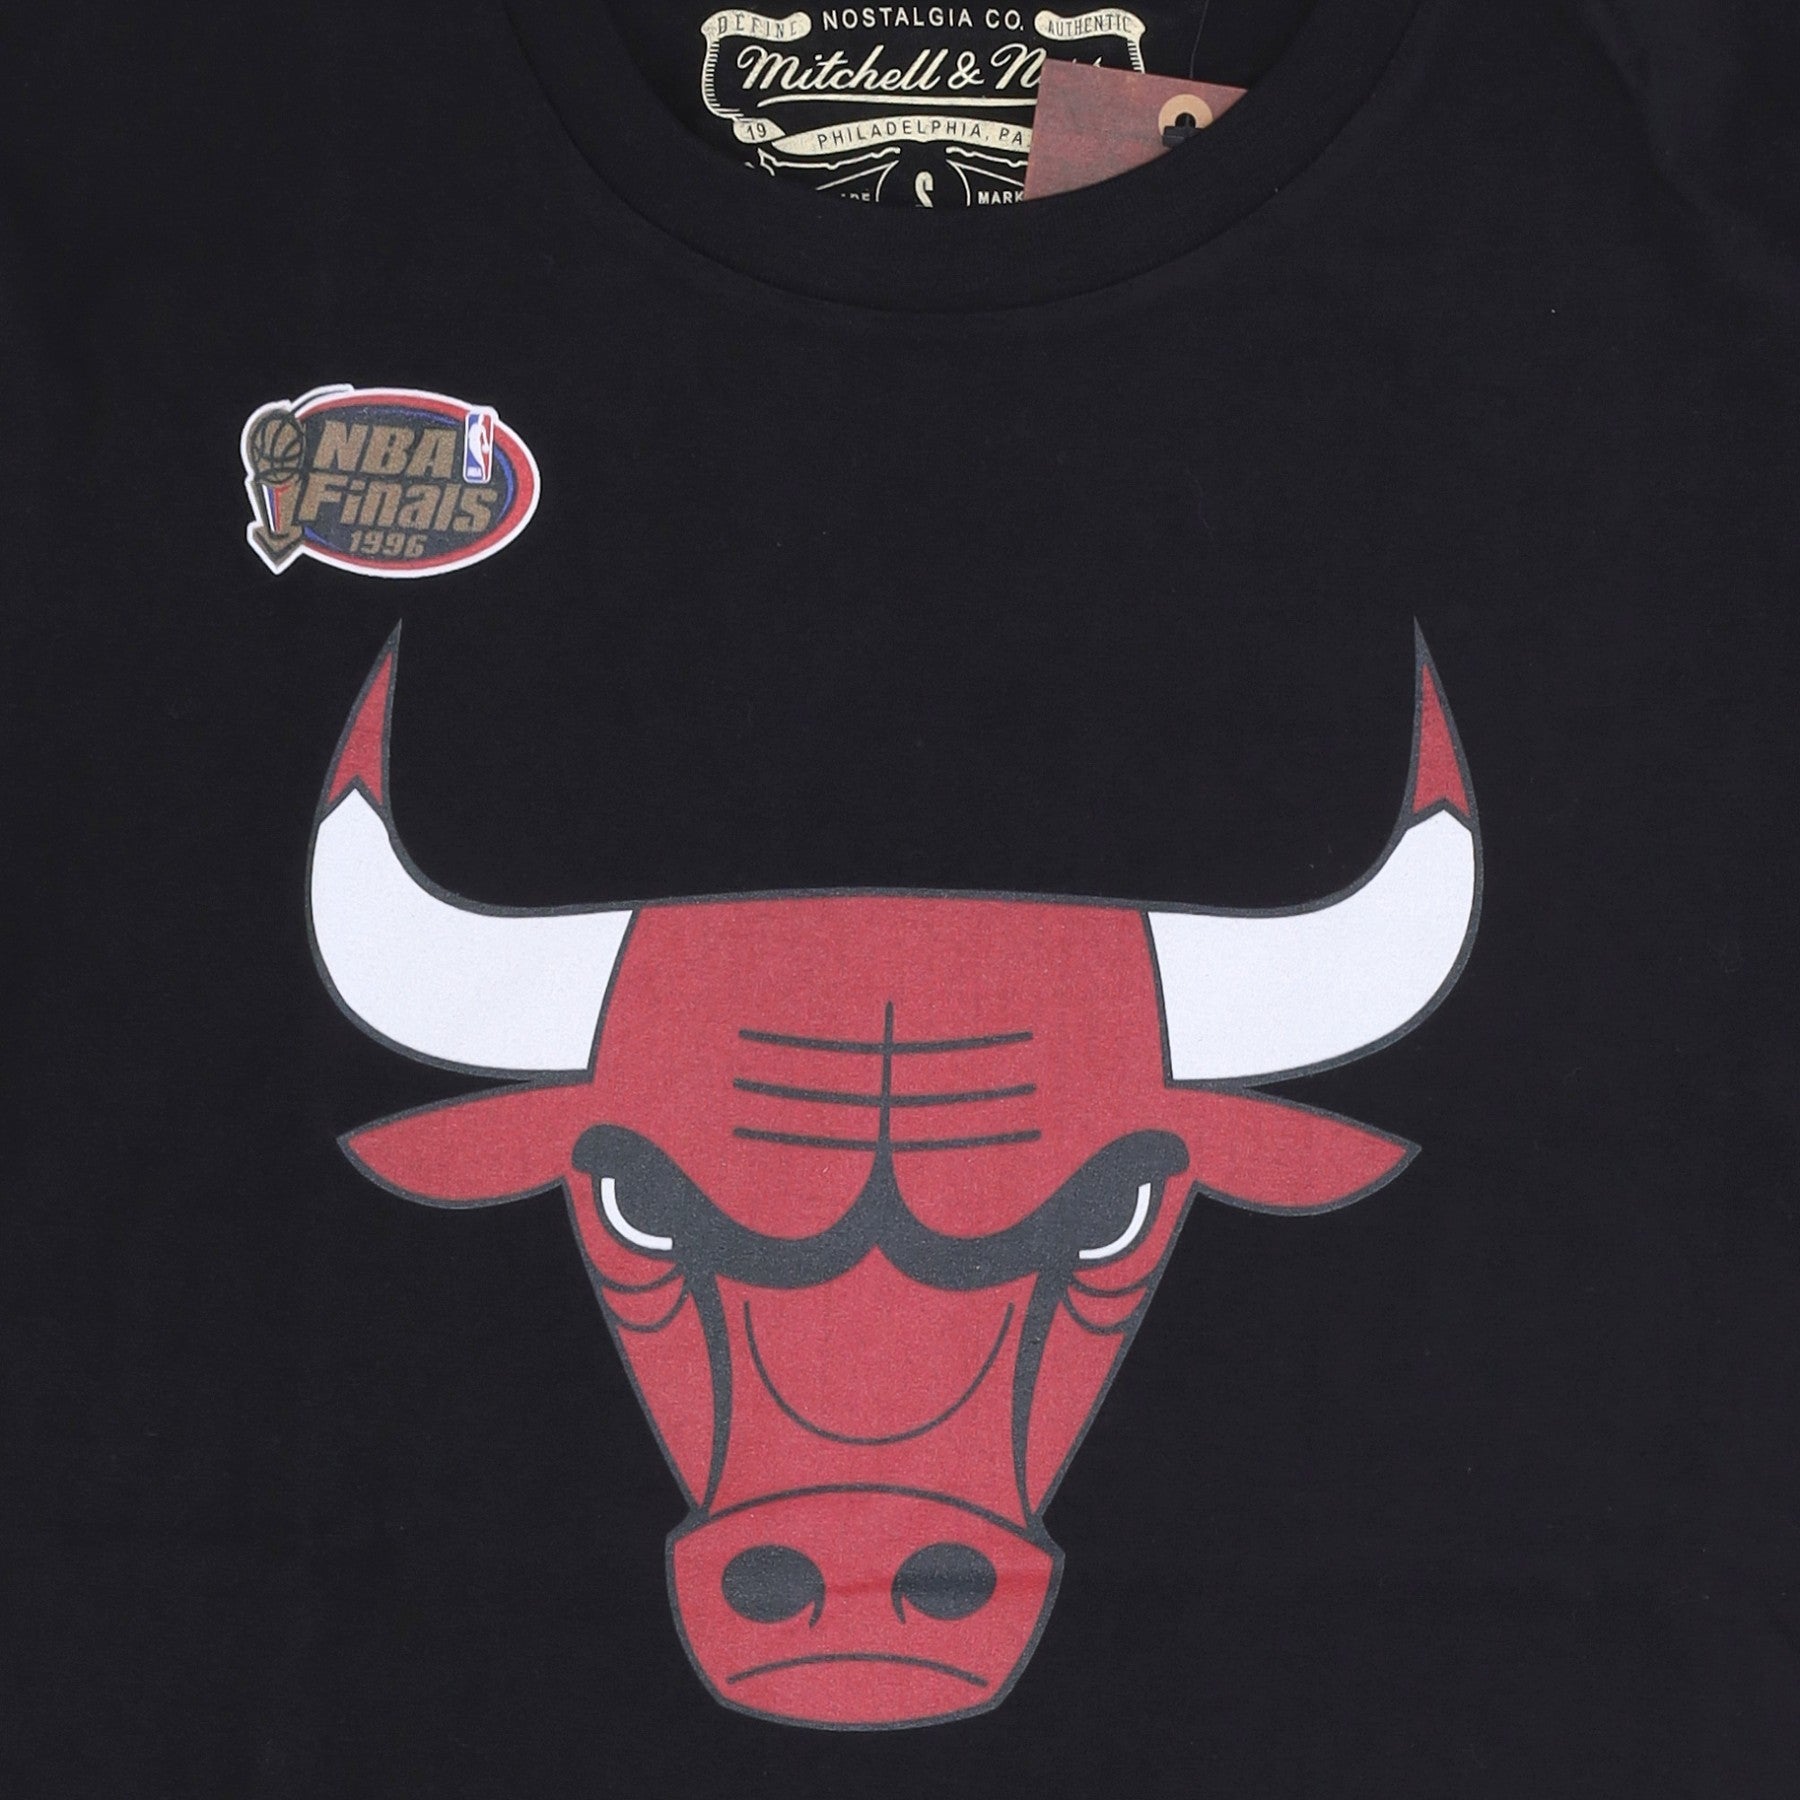 Camiseta del equipo con logotipo de la NBA